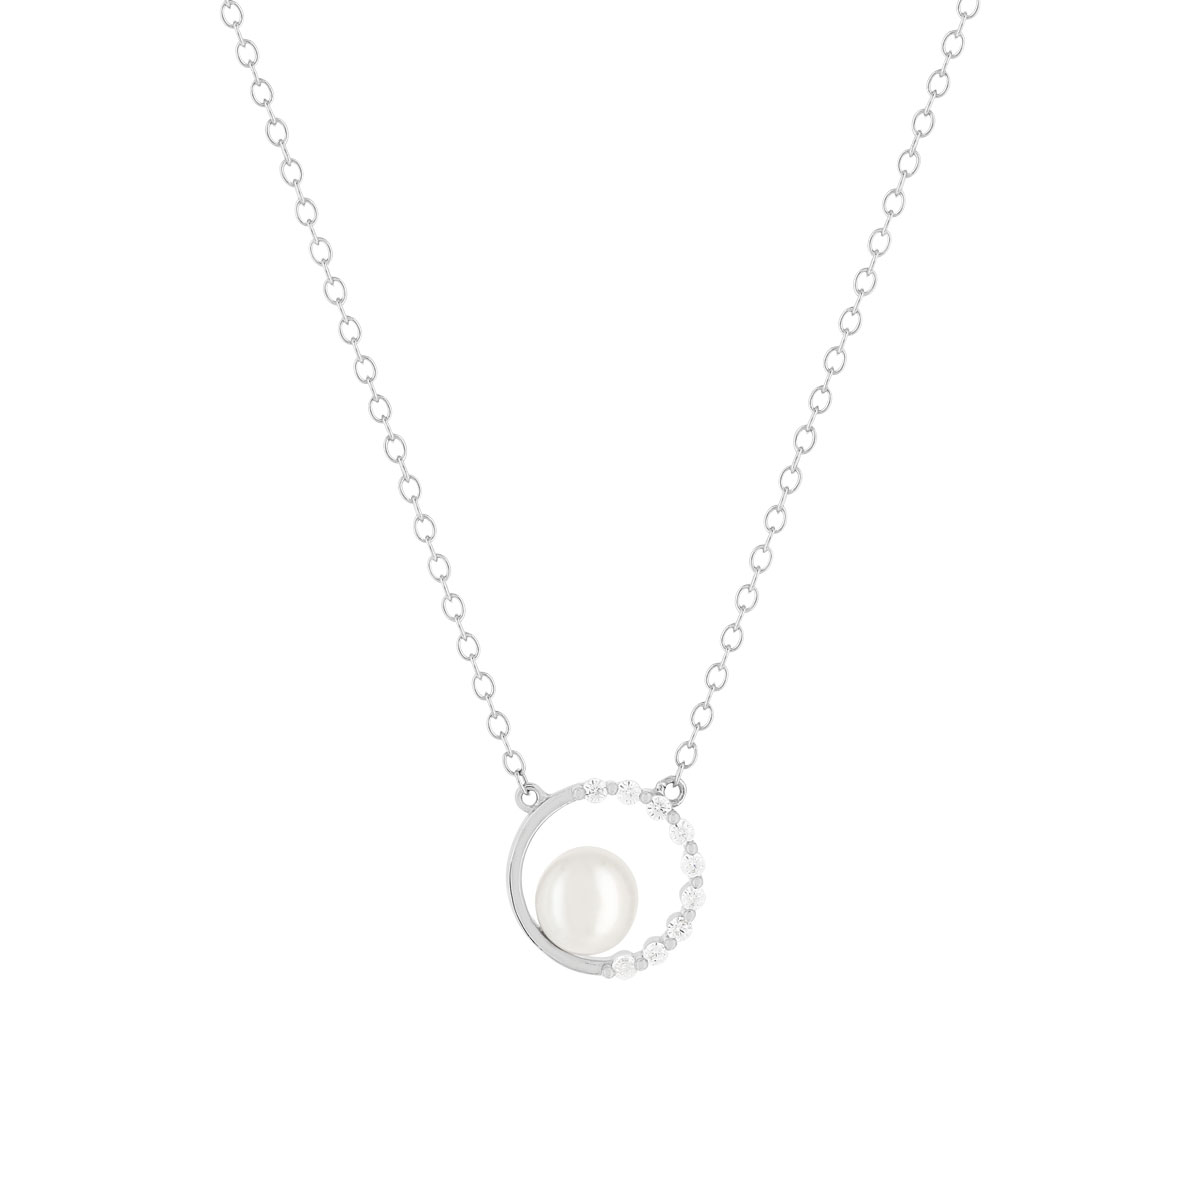 Collier argent 925 cercle zirconias perle de culture de Chine 45 cm